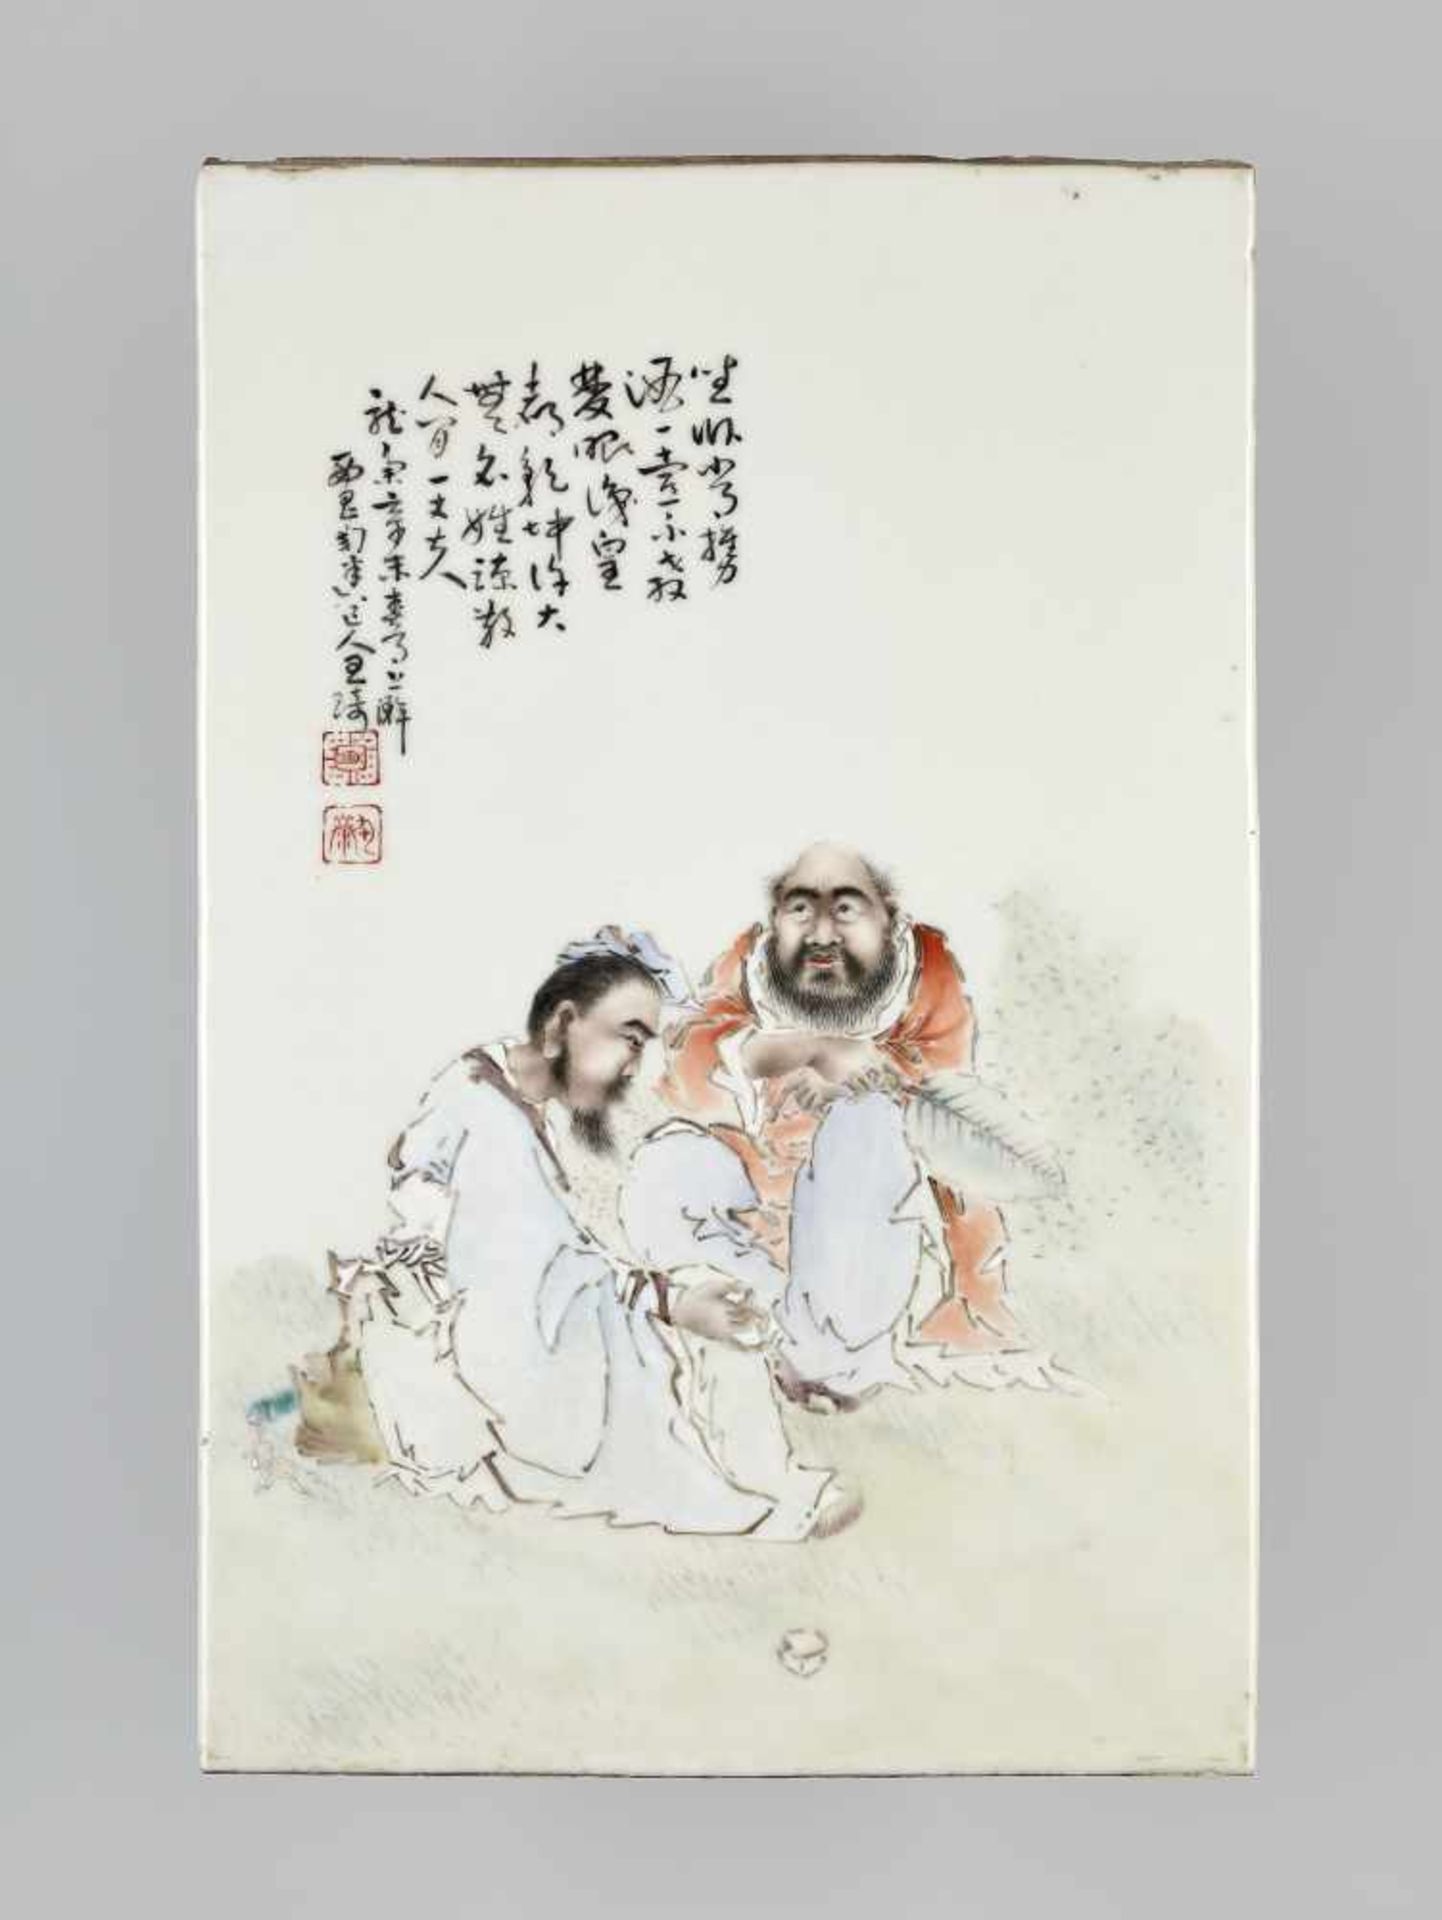 A PORCELAIN PLAQUE BY WANG QI, 1931China, signed Xichang Taomi daoren Wang Qi and dated 1931. Two